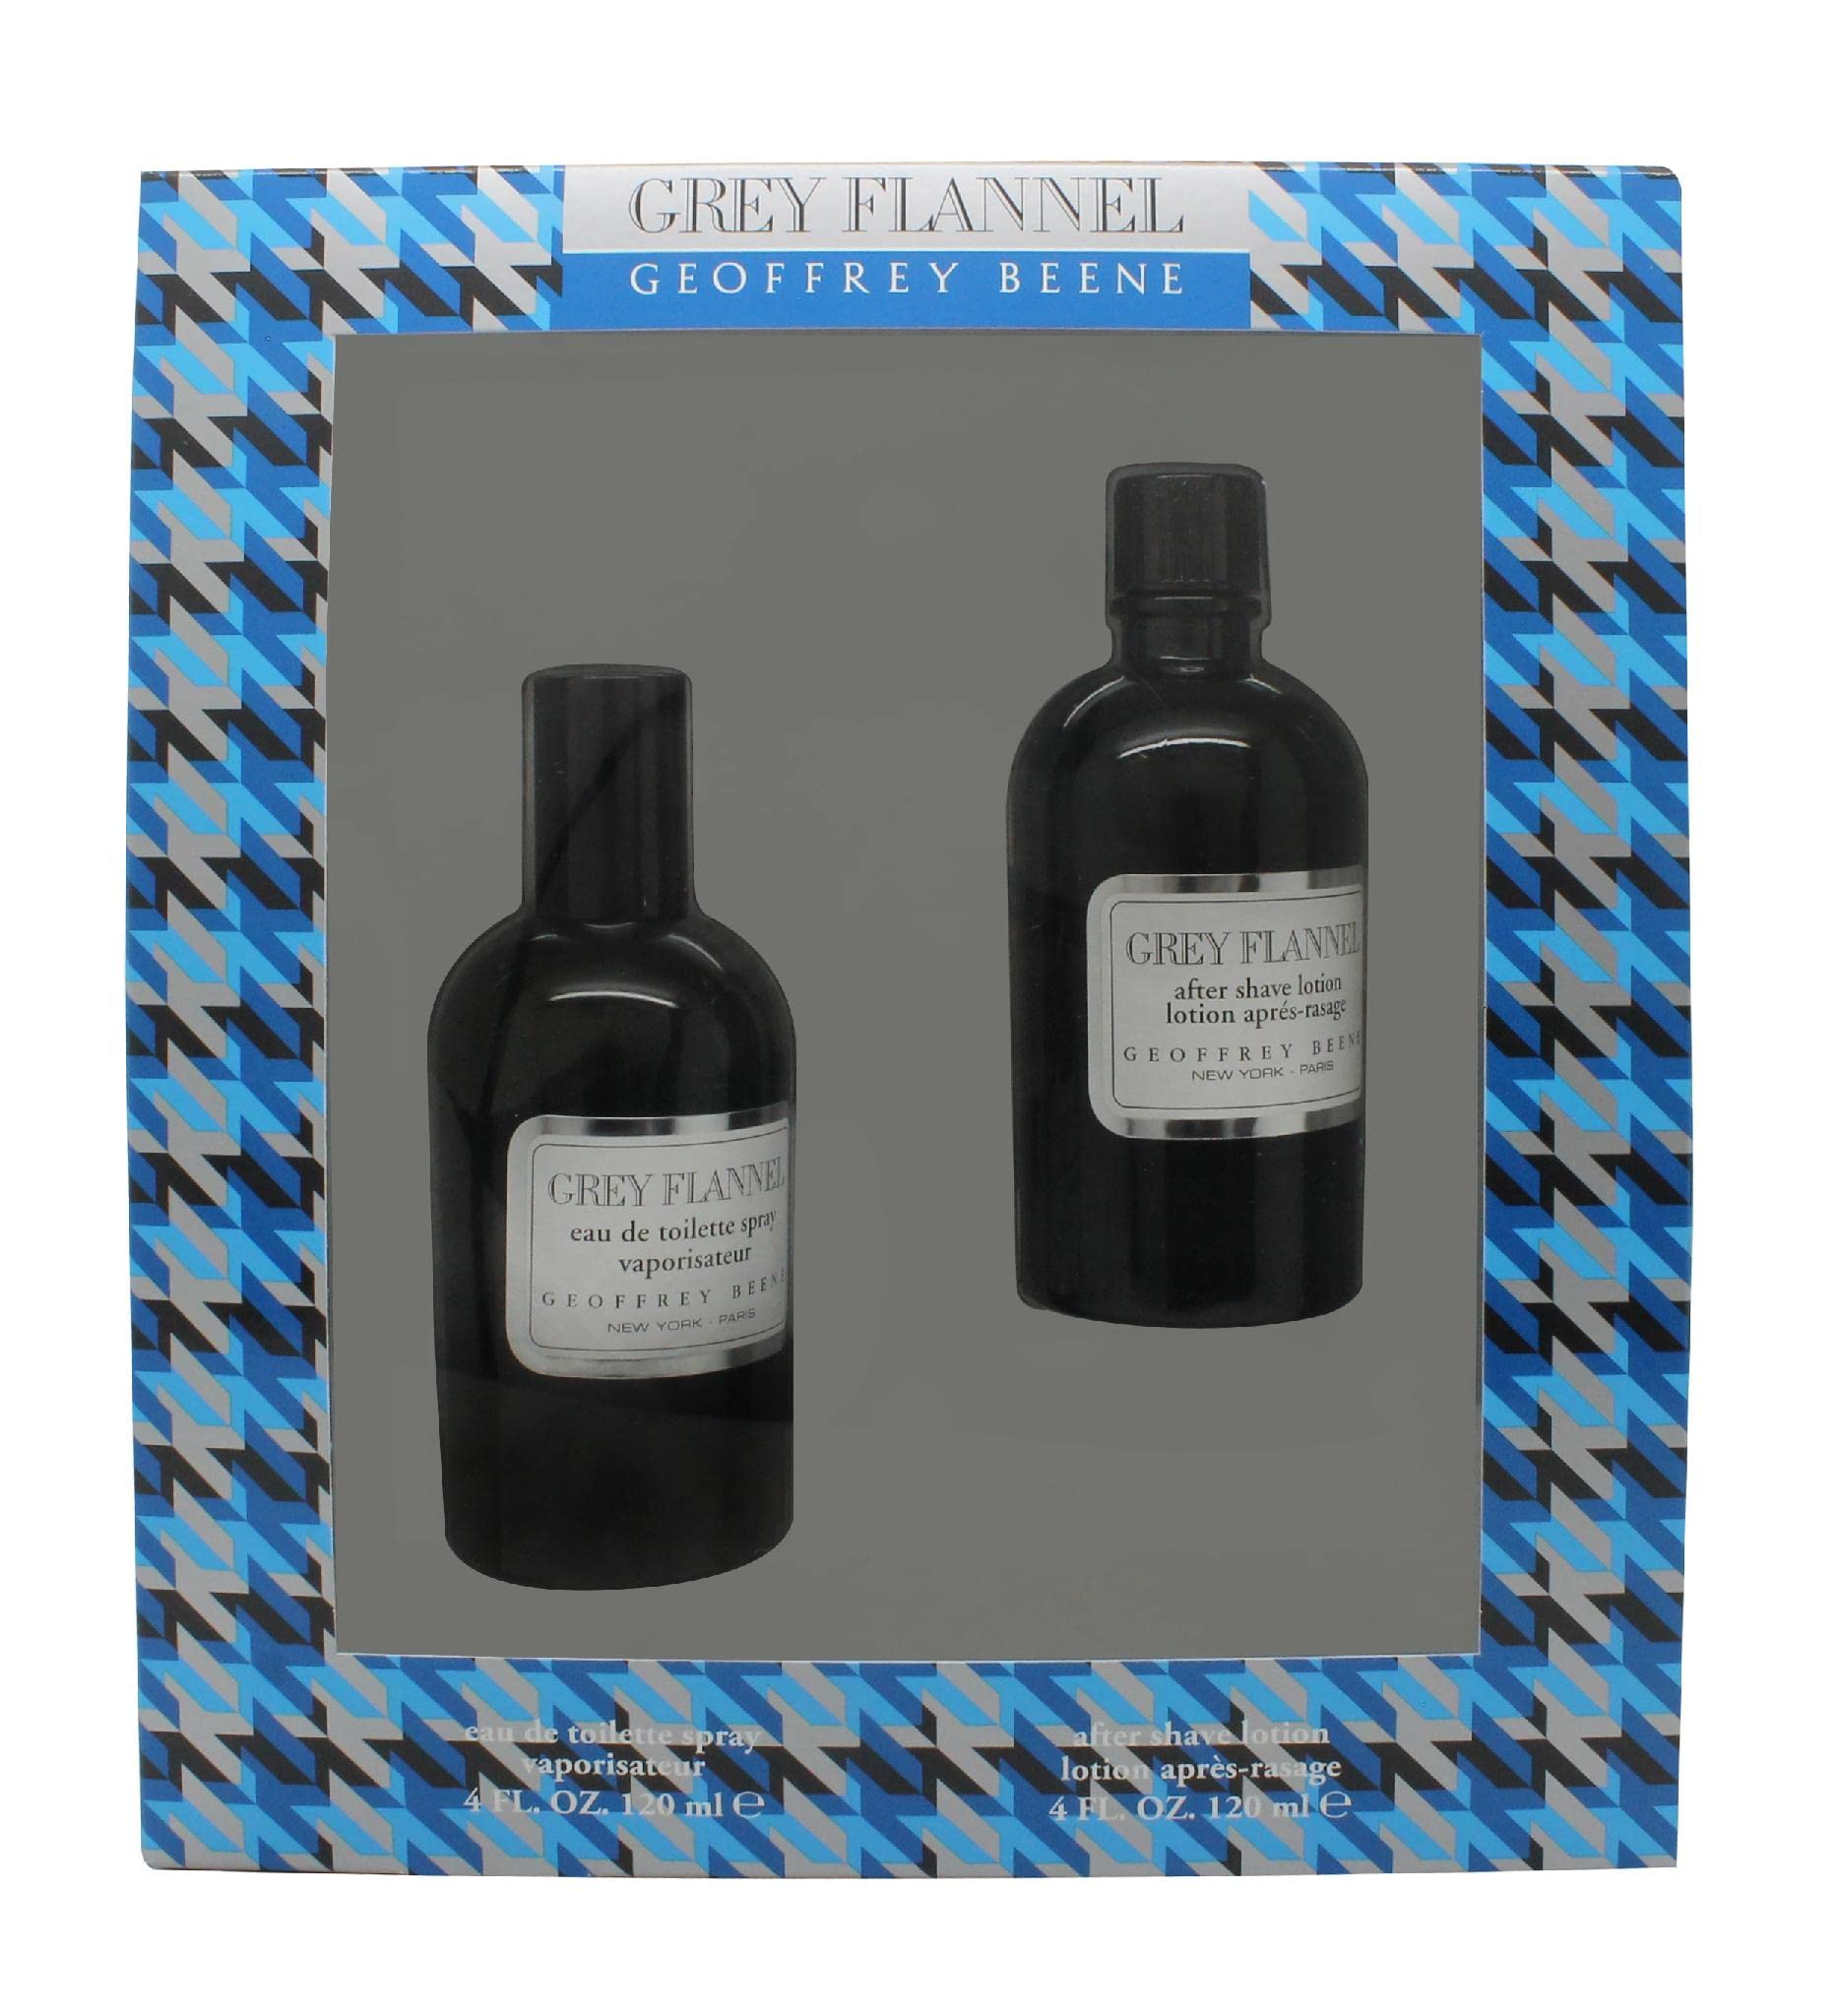 Geoffrey Beene Grey Flannel SET: edt 120ml + after shave 120ml